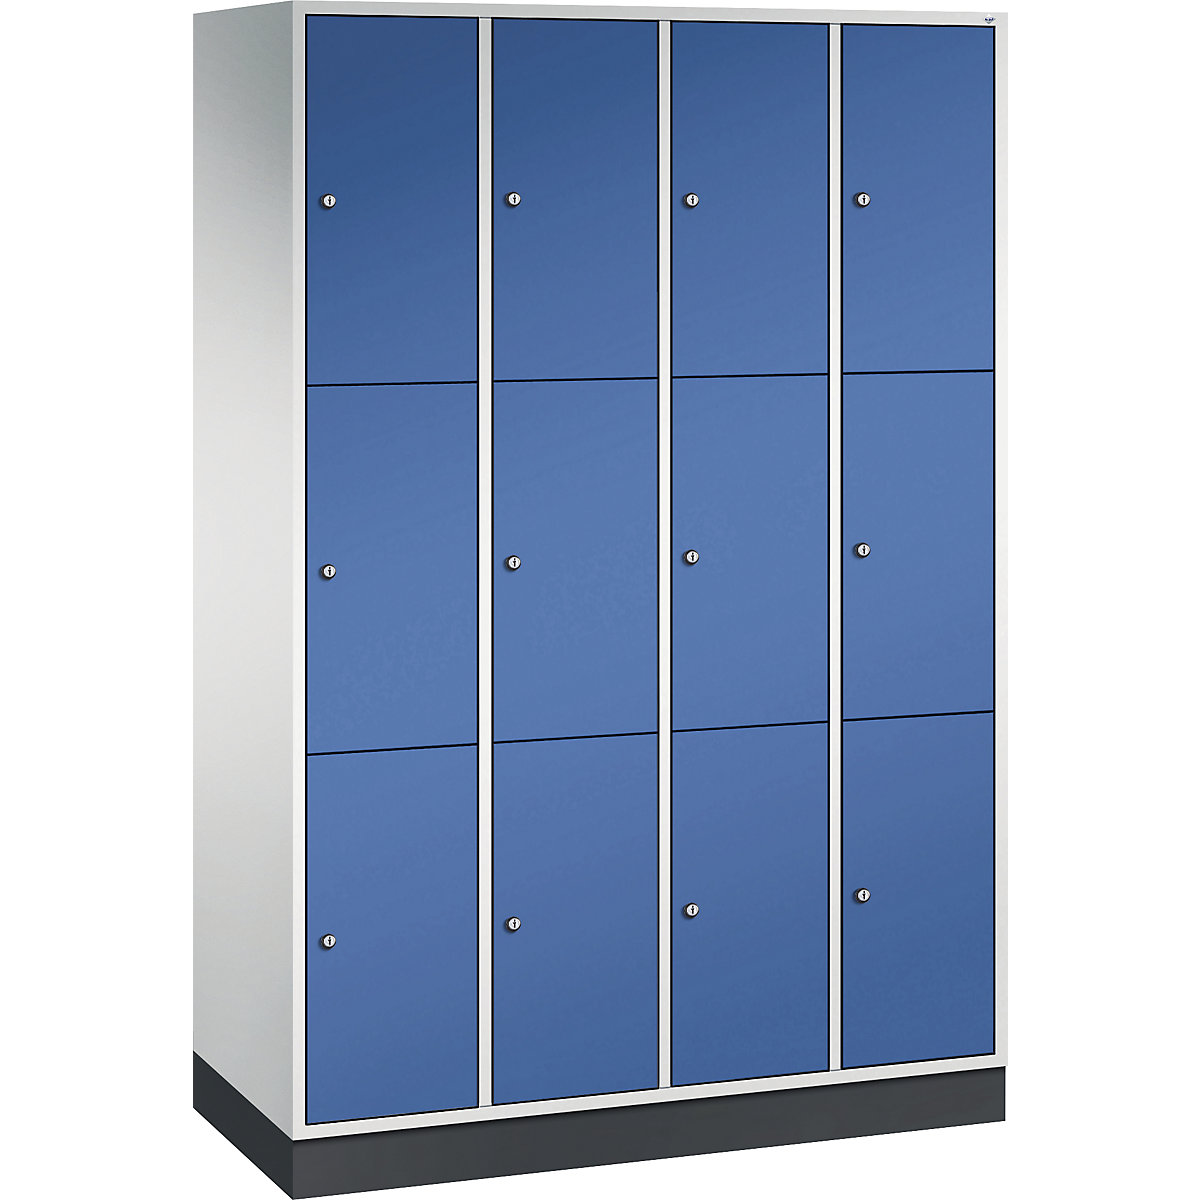 Vestiaire multicases en acier INTRO, casiers hauteur 580 mm – C+P, l x p 1220 x 500 mm, 12 casiers, corps gris clair, portes bleu gentiane-16